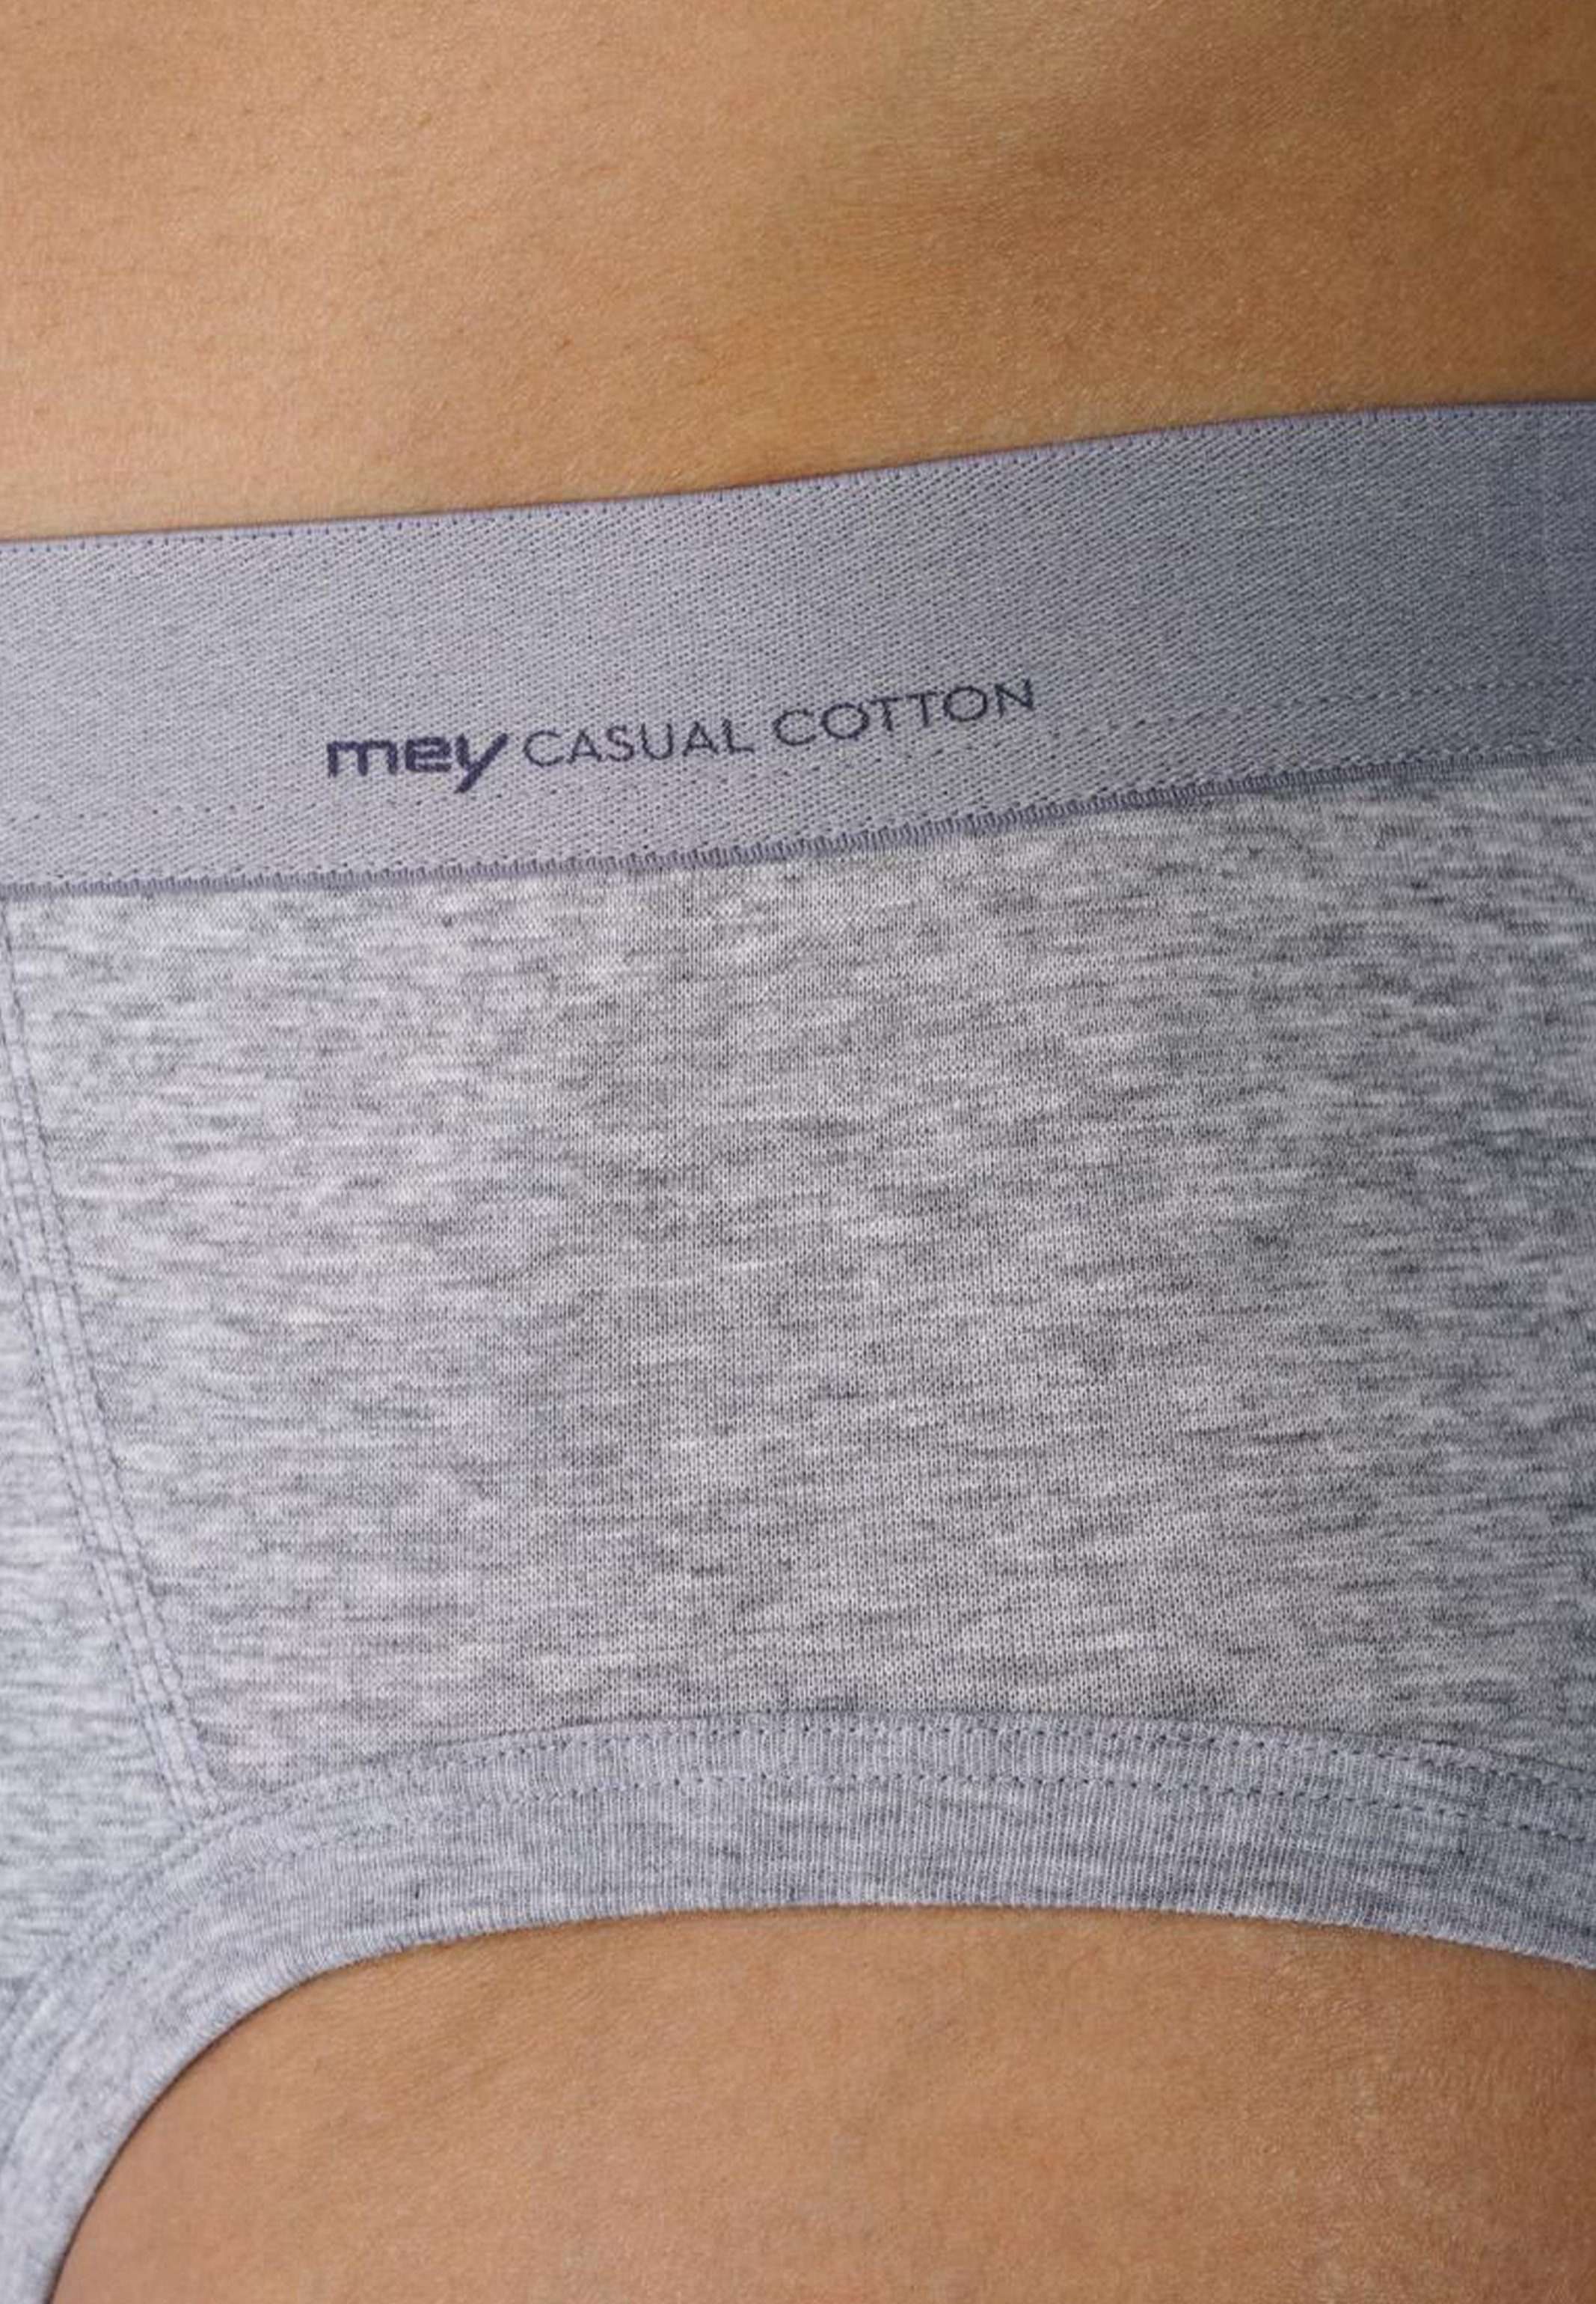 Mey Slip Casual Cotton (1-St) / Baumwolle - Slip Webbund - Unterhose Eingriff Light - Ohne Aufgesetzter Grey Melange